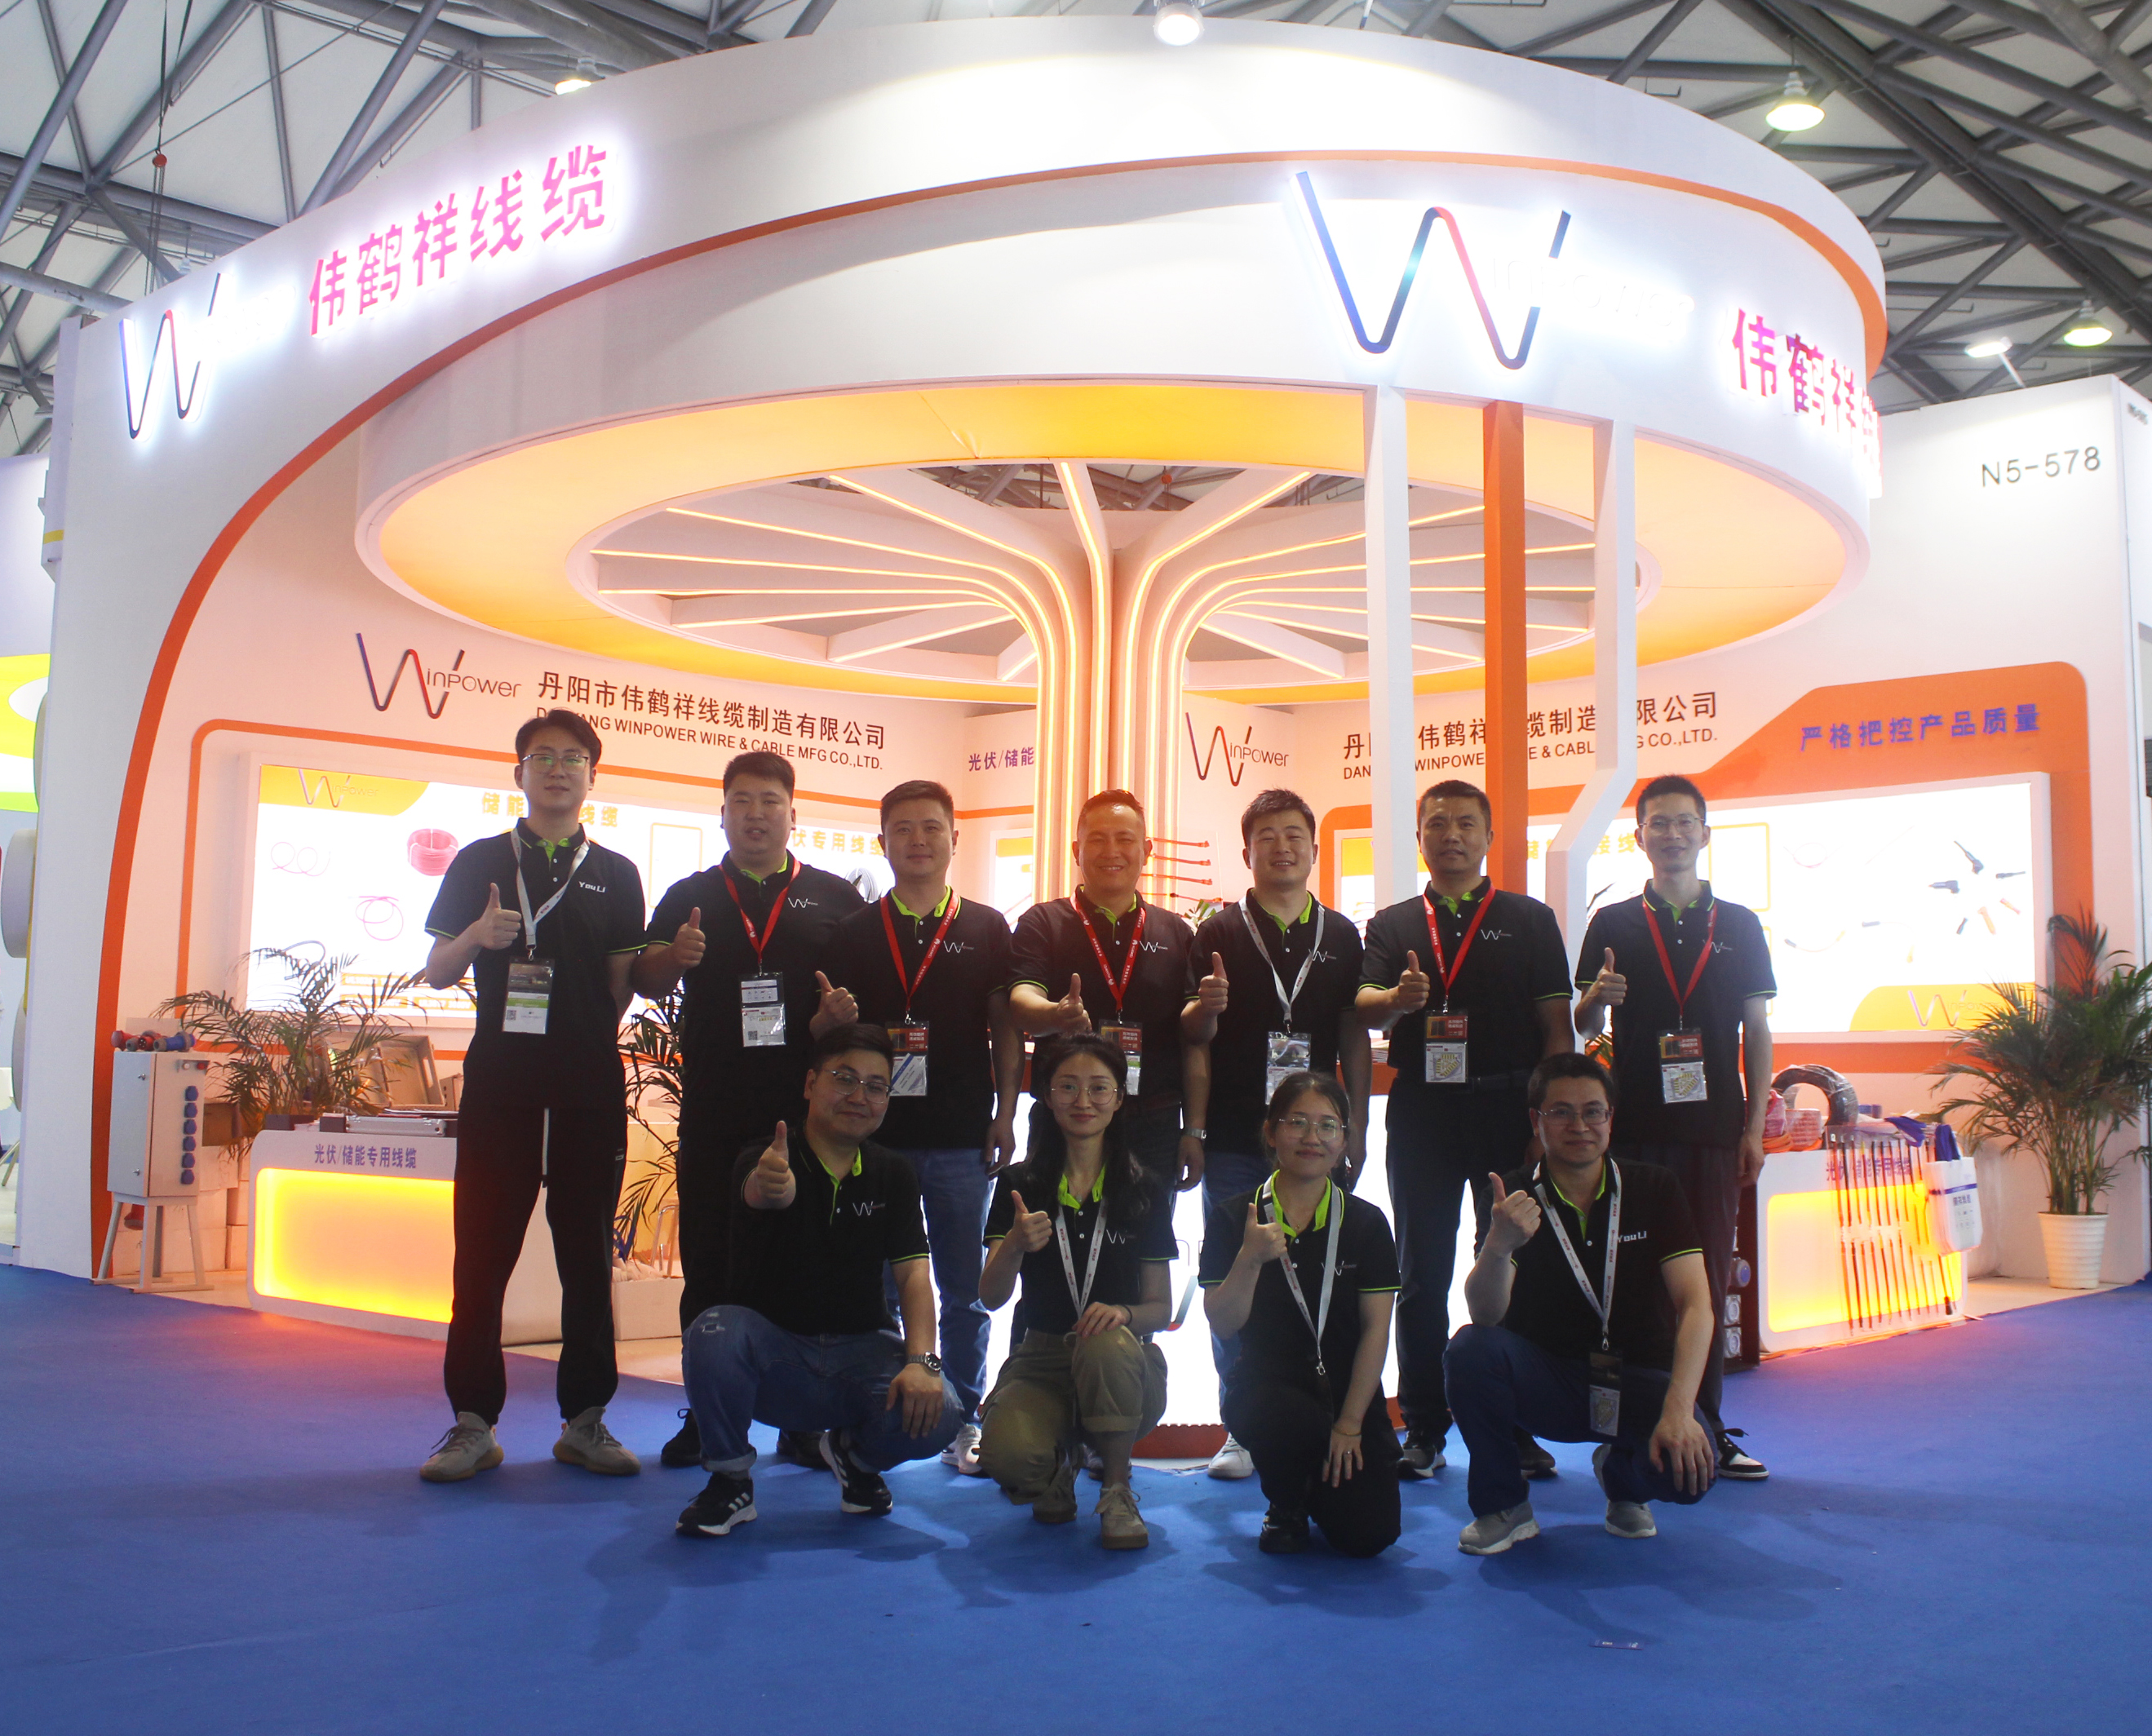 भर्खरै, तीन दिने 16 औं SNEC अन्तर्राष्ट्रिय सौर्य फोटोभोल्टिक र स्मार्ट ऊर्जा (Shanghai) सम्मेलन र प्रदर्शनी सांघाईमा सम्पन्न भयो।